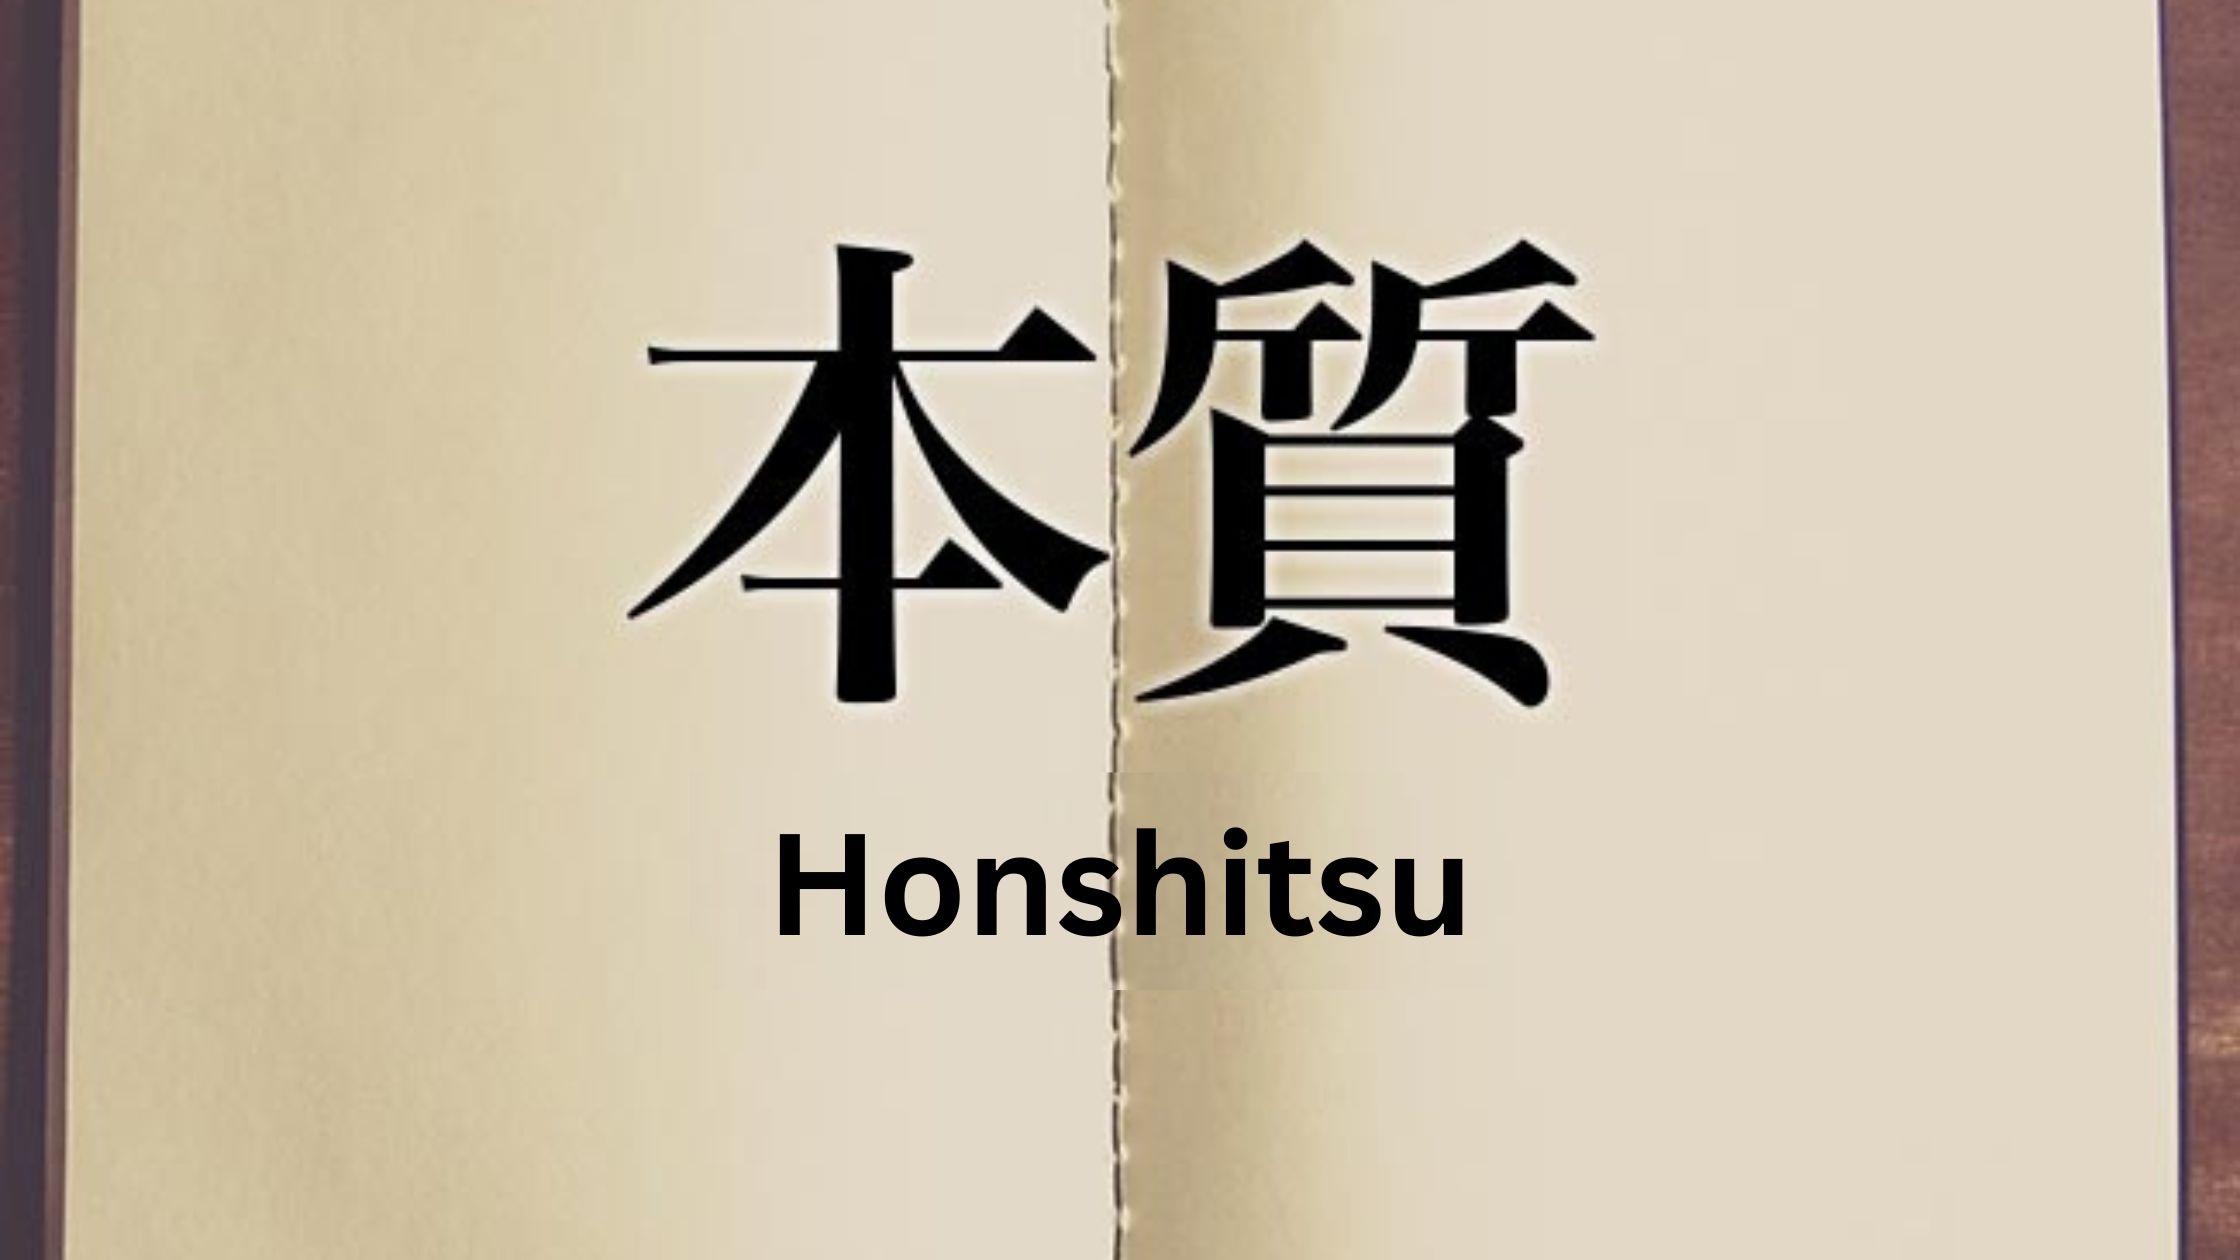 Hoshitsu - Suština - Esencija